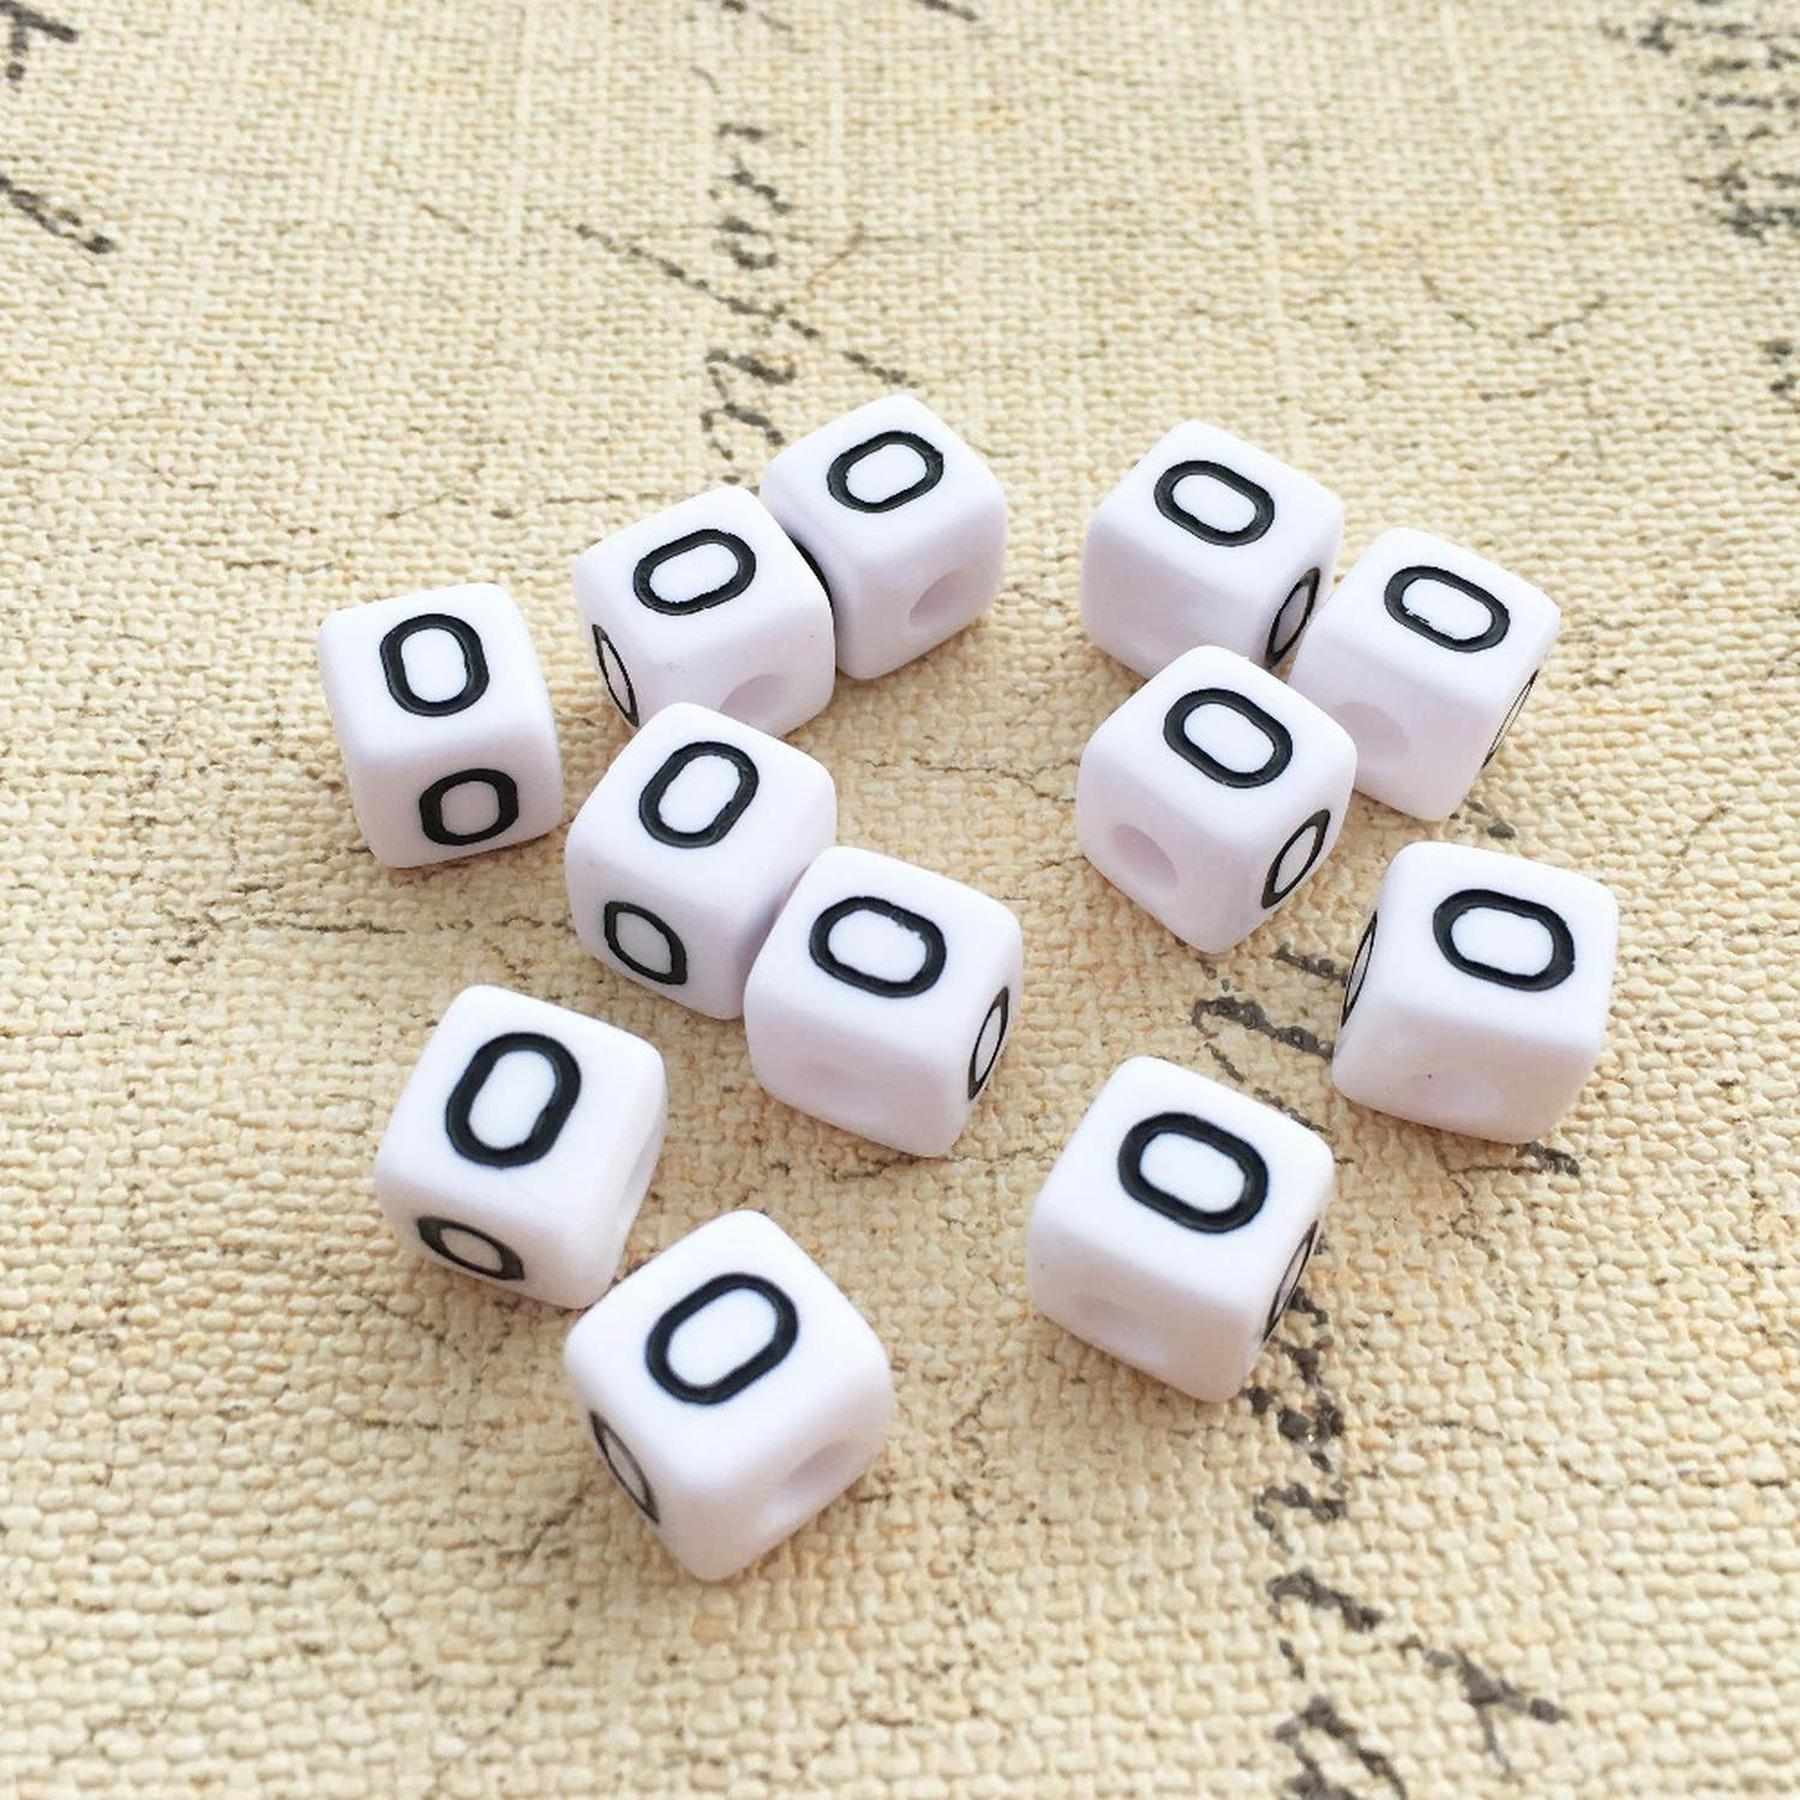 Buchstaben Perlen, 30 Stück, 6x6 mm, weiß mit schwarz, eckig, Buchstabe O